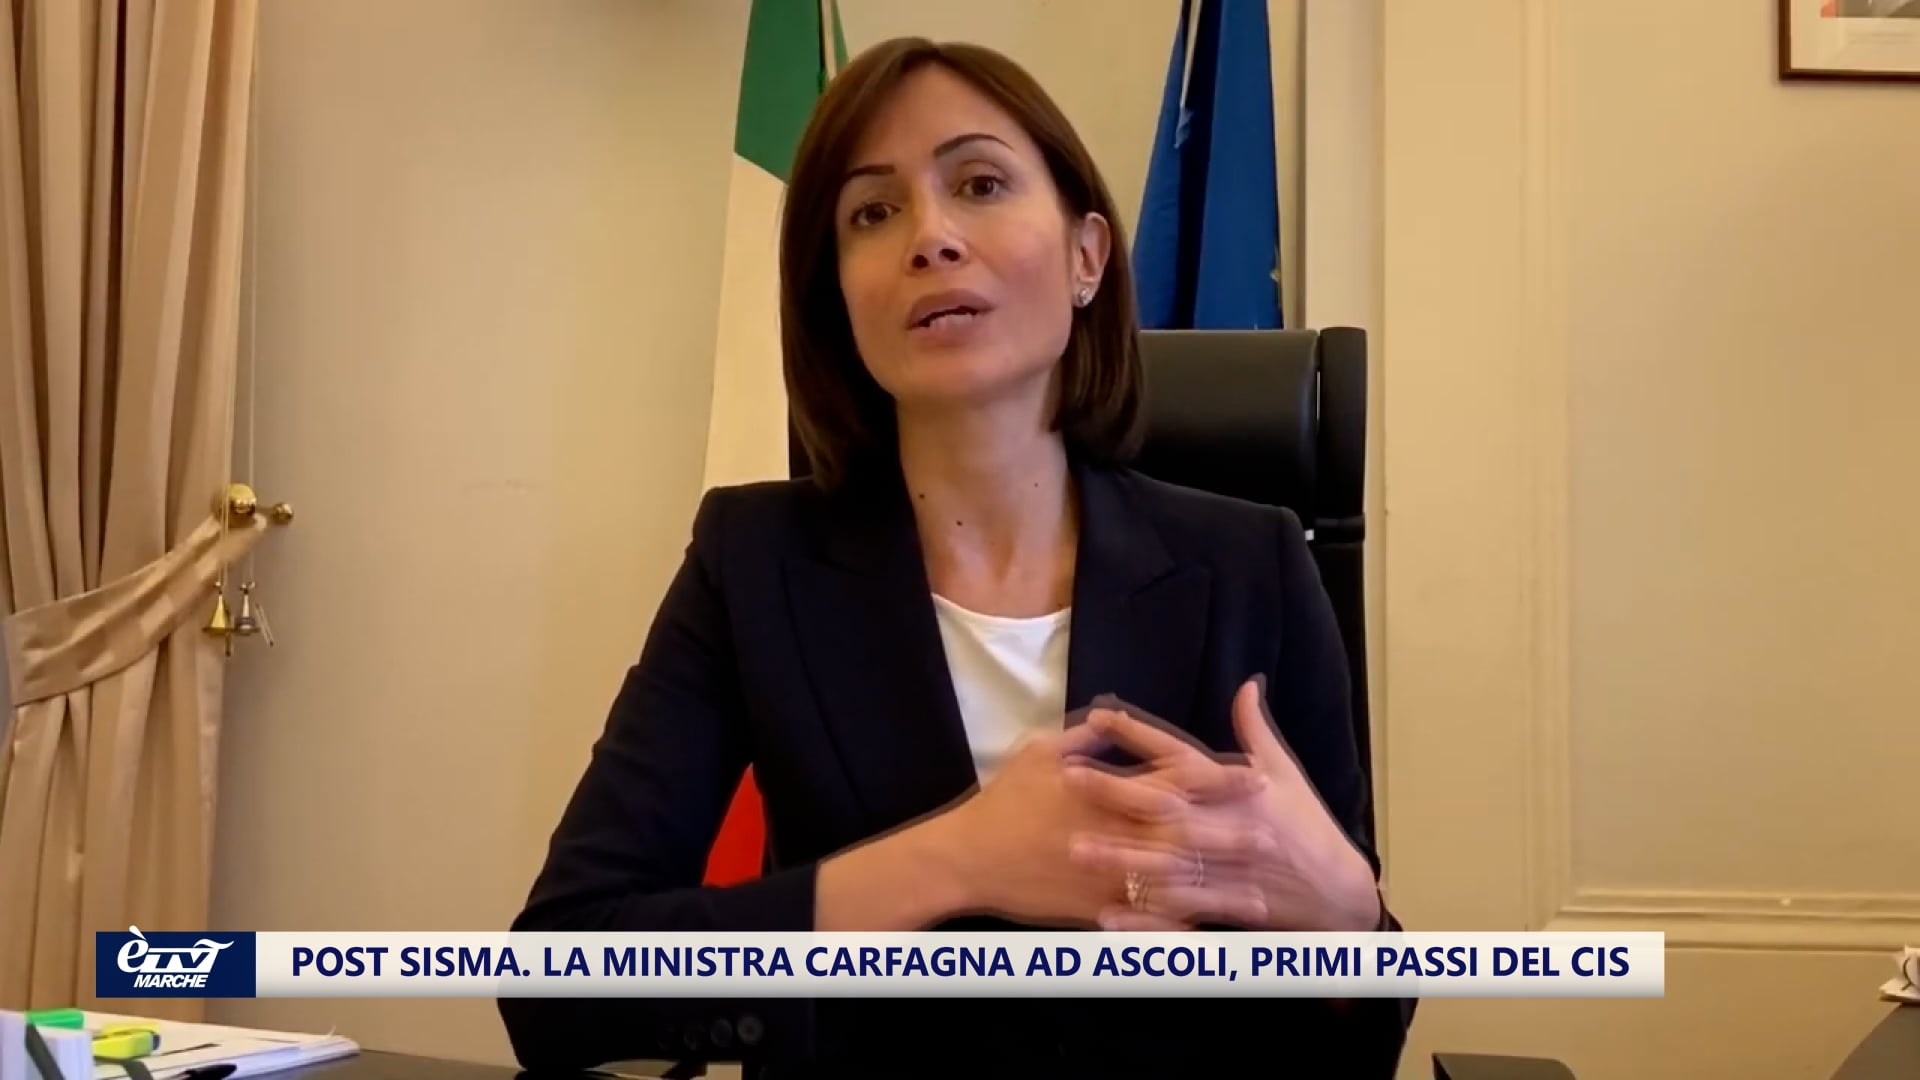 Post sisma, la ministra Carfagna ad Ascoli. Primi passi del CIS